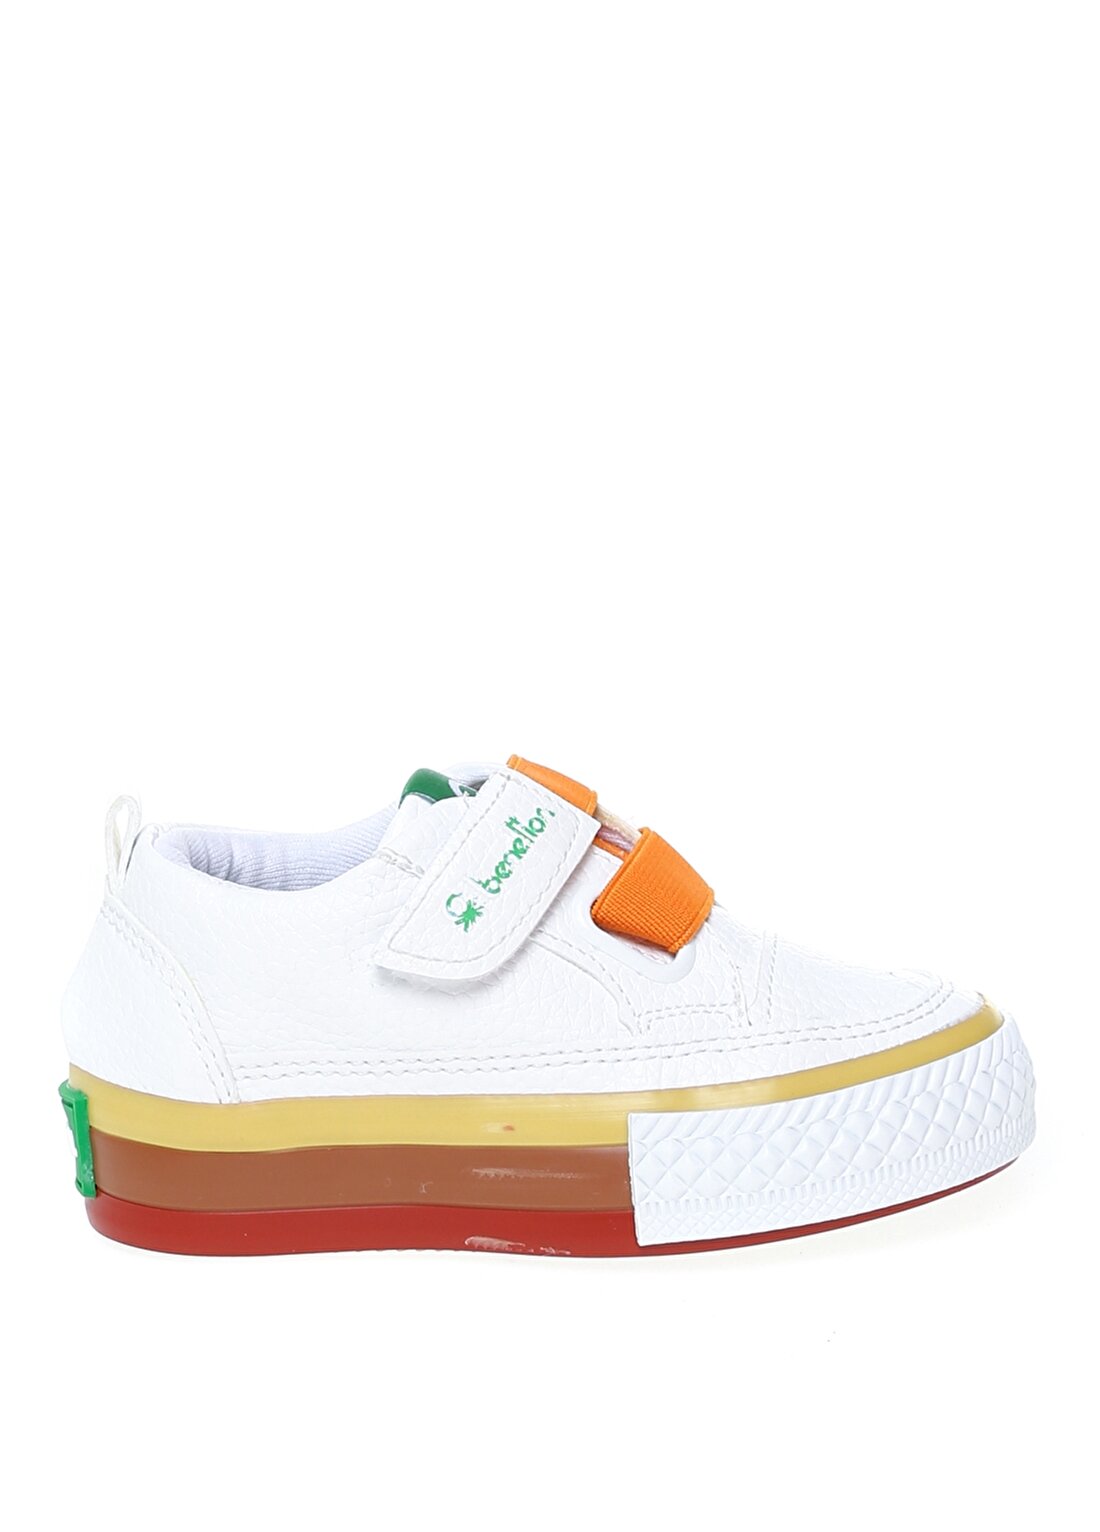 Benetton BN-30445 Beyaz Bebek Yürüyüş Ayakkabısı